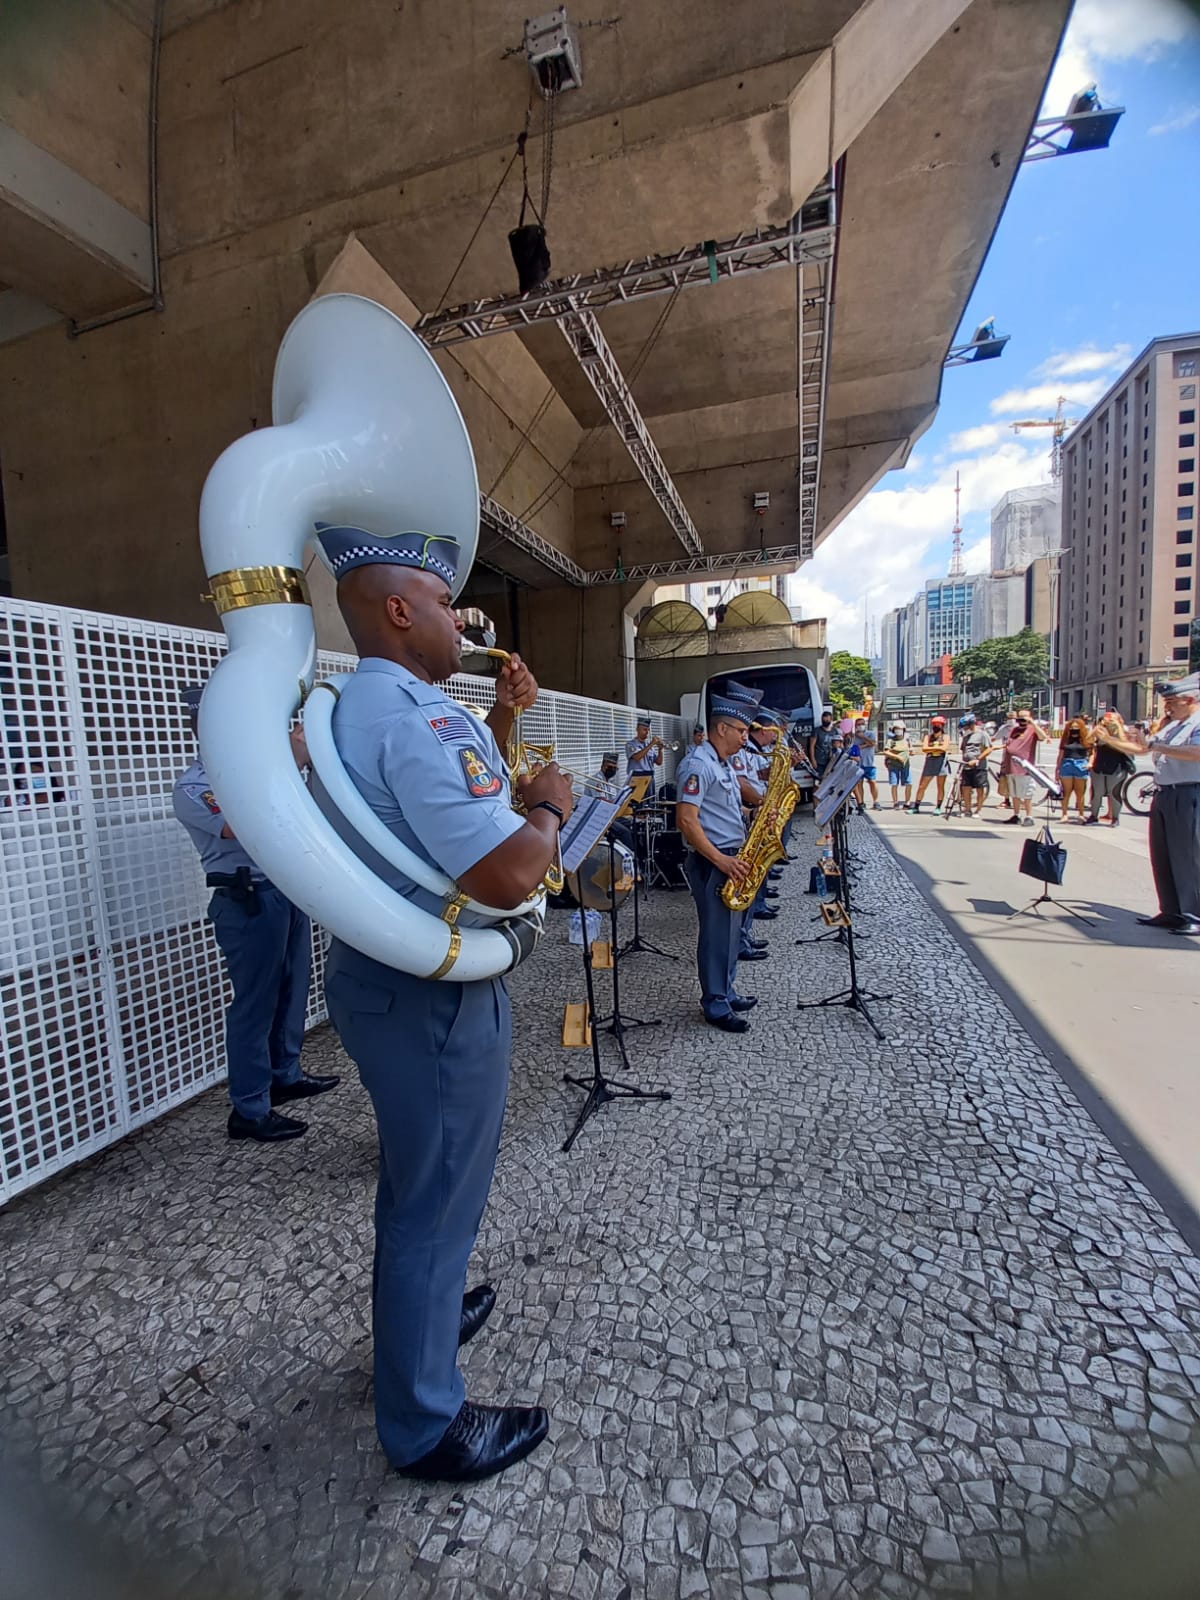 Avenida Paulista comemora 130 Anos